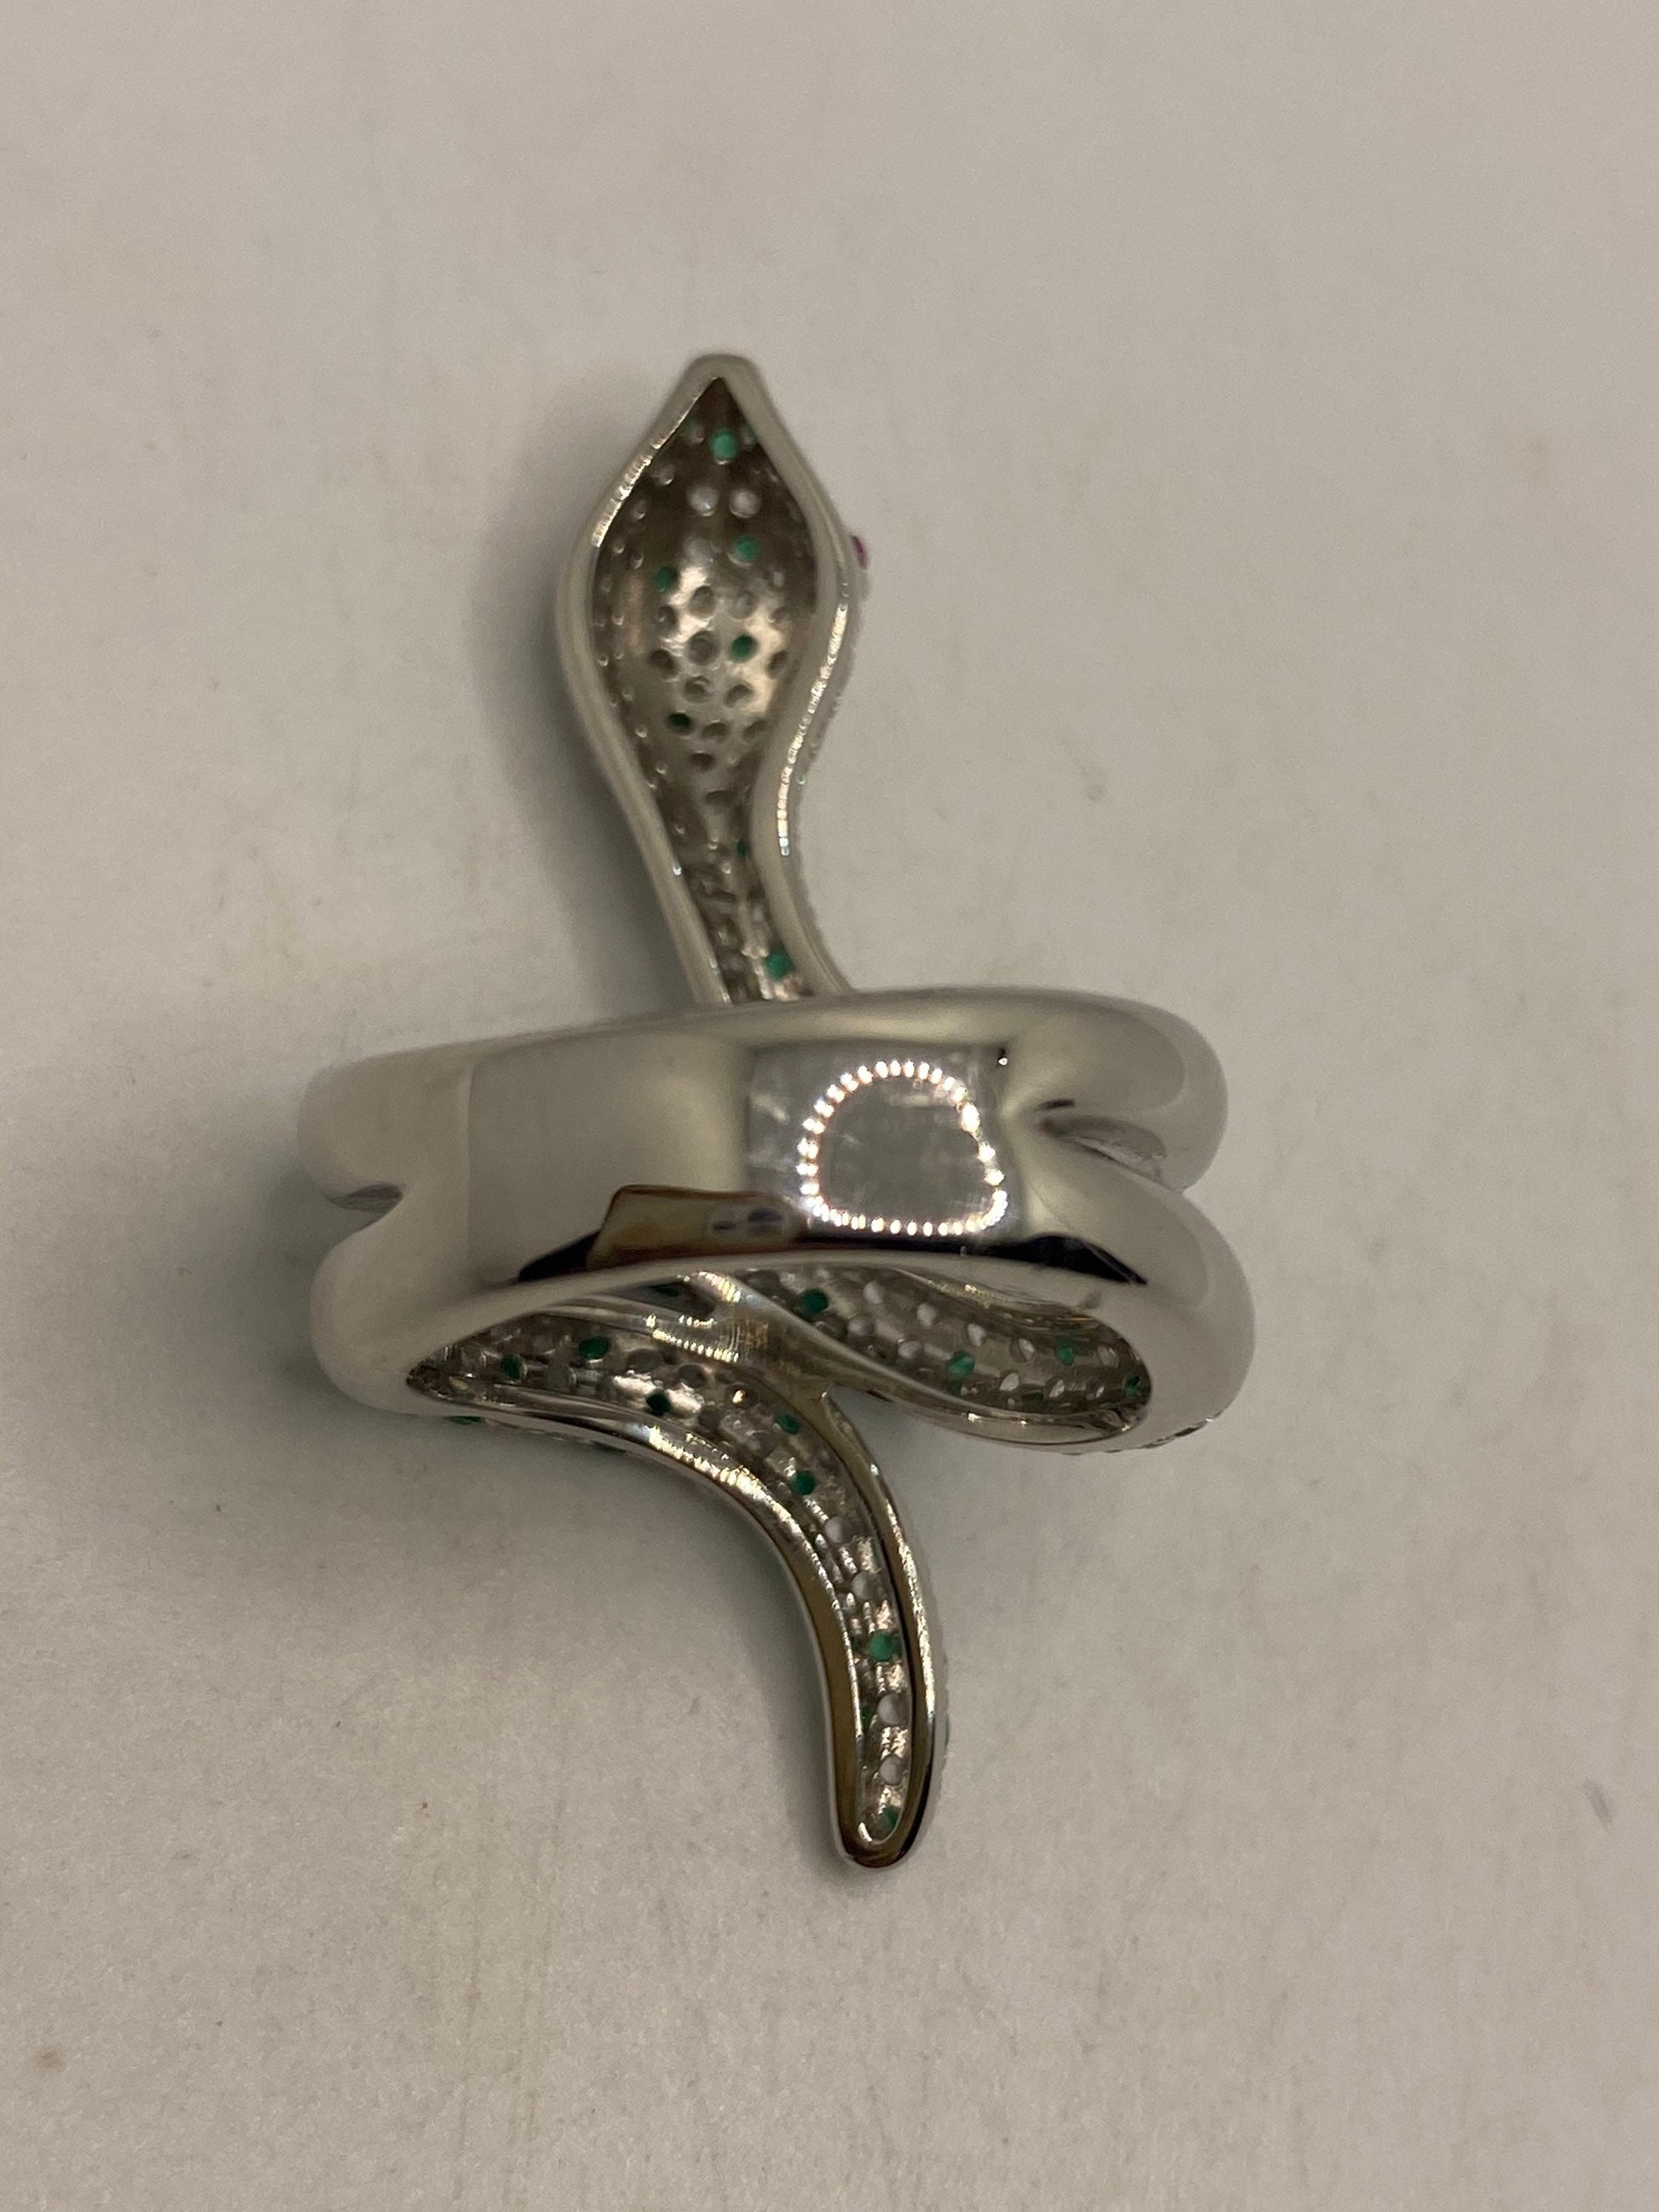 Vintage Snake Ring 925 Sterling Silver Crystal Size 9